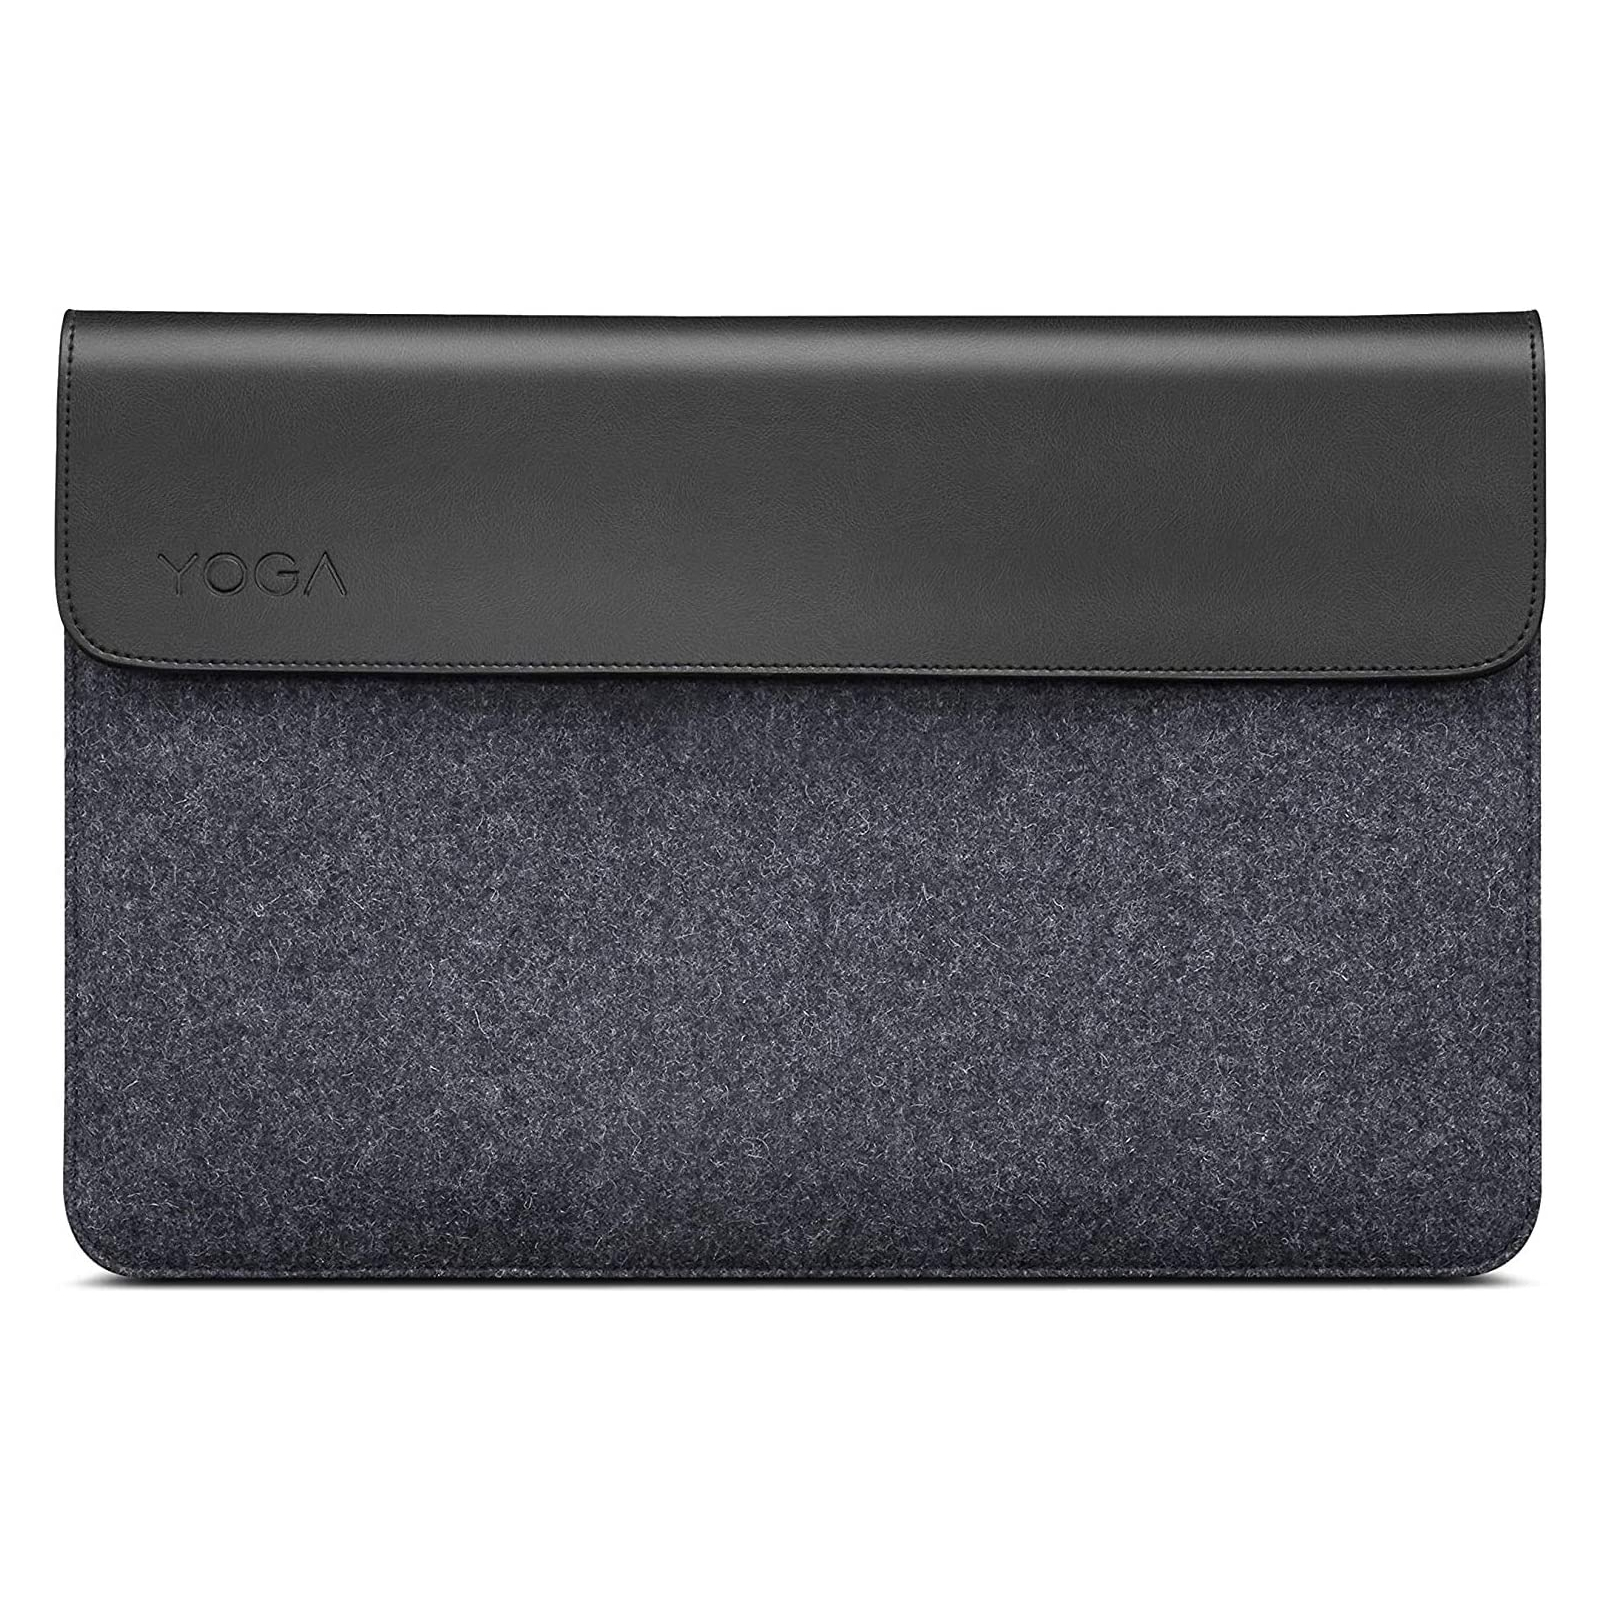 Чехол для ноутбука Lenovo 15" Yoga Sleeve (GX40X02934)